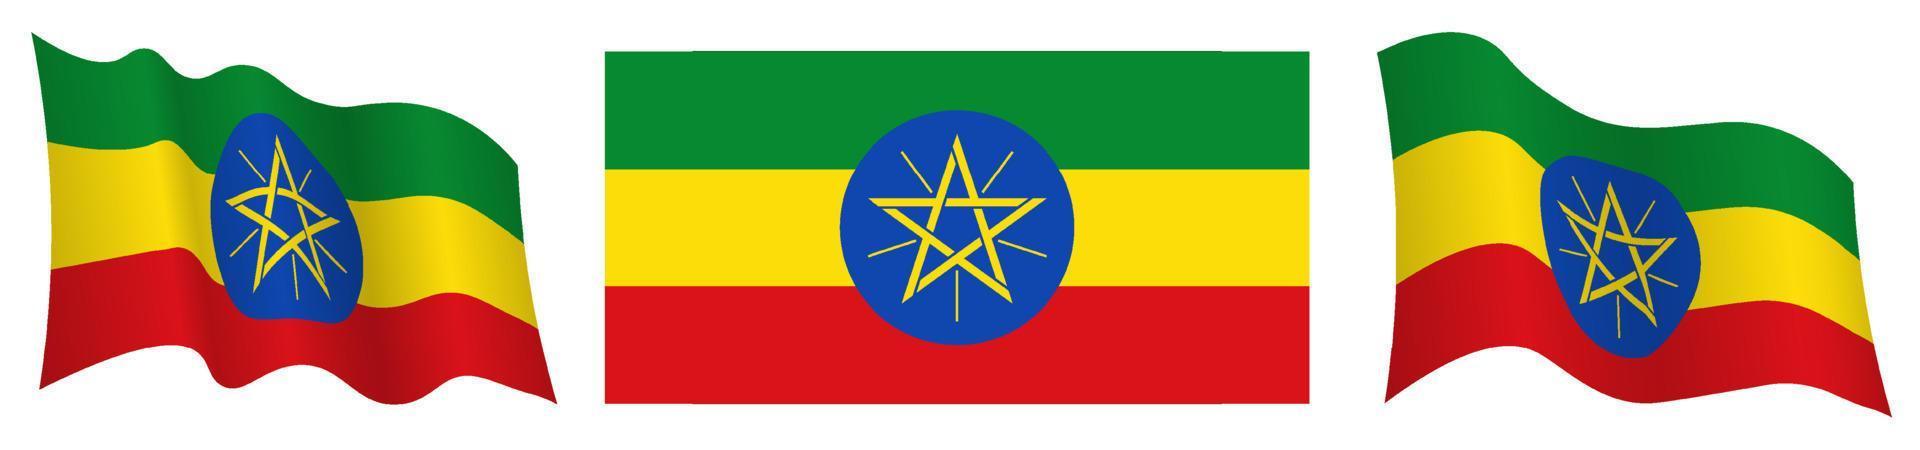 flagga av etiopien i statisk placera och i rörelse, fladdrande i vind i exakt färger och storlekar, på vit bakgrund vektor